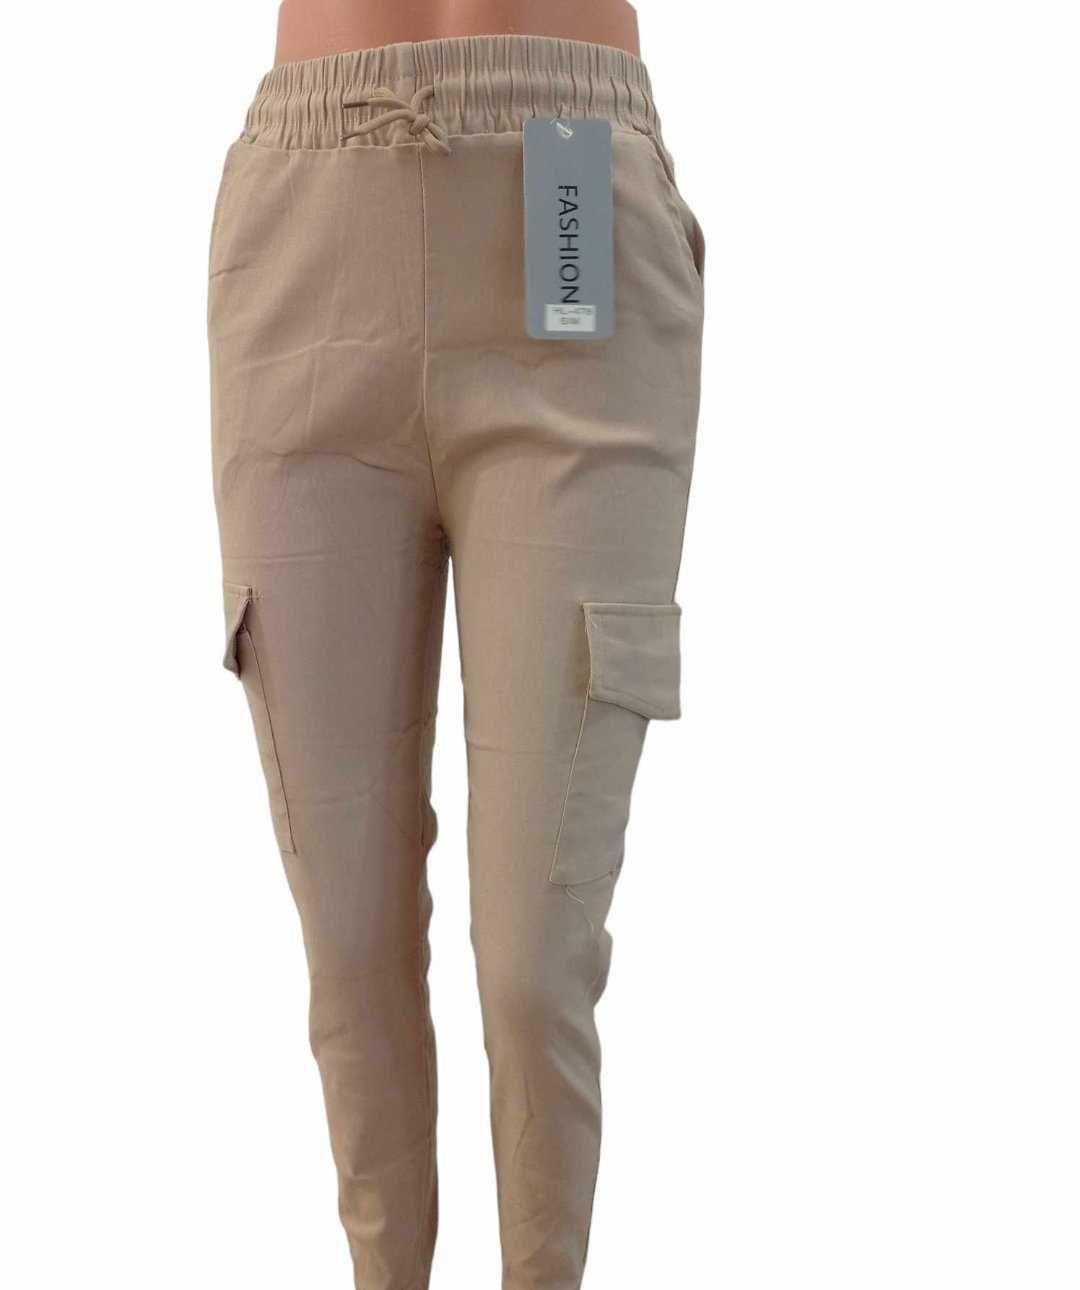 Spodnie bojówki damskie S/M ze ściągaczem - wyprzedaż